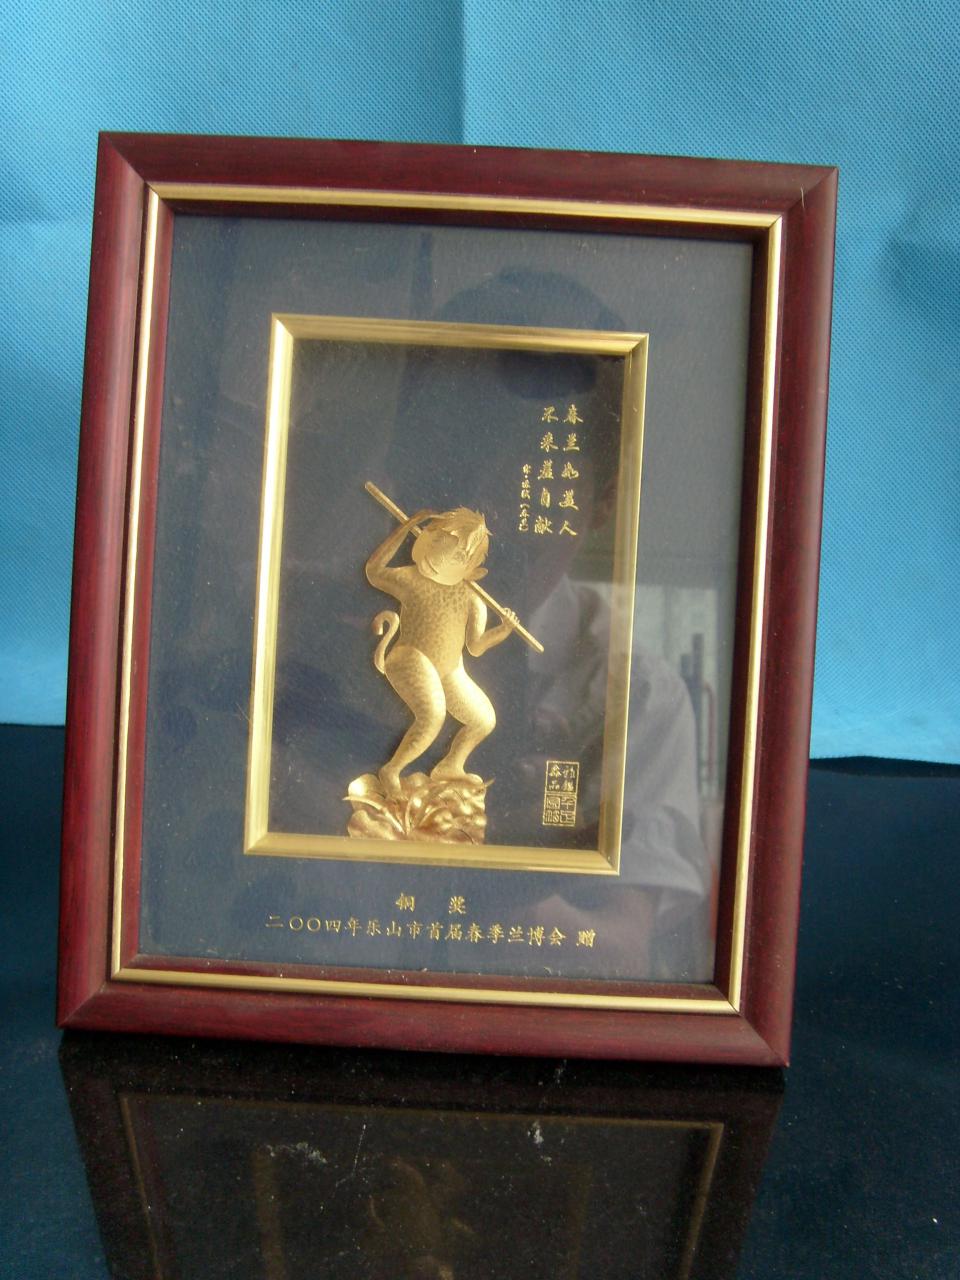 2004年乐山首届春季兰博会-铜奖